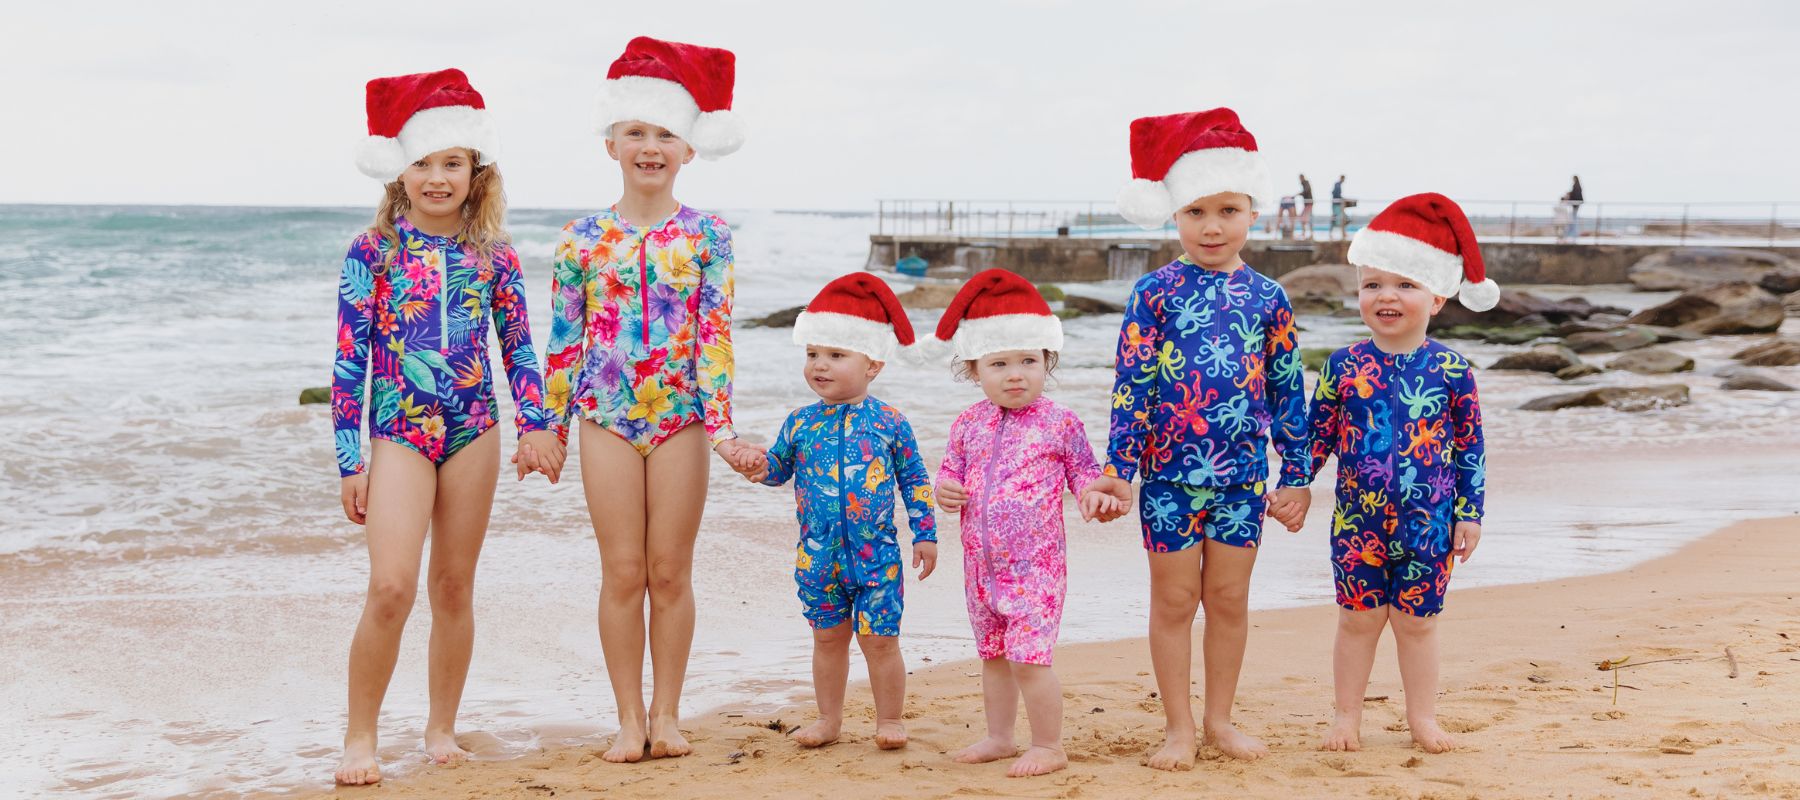 Kids on beach wearing santa hats in Ocean Tales swimwear